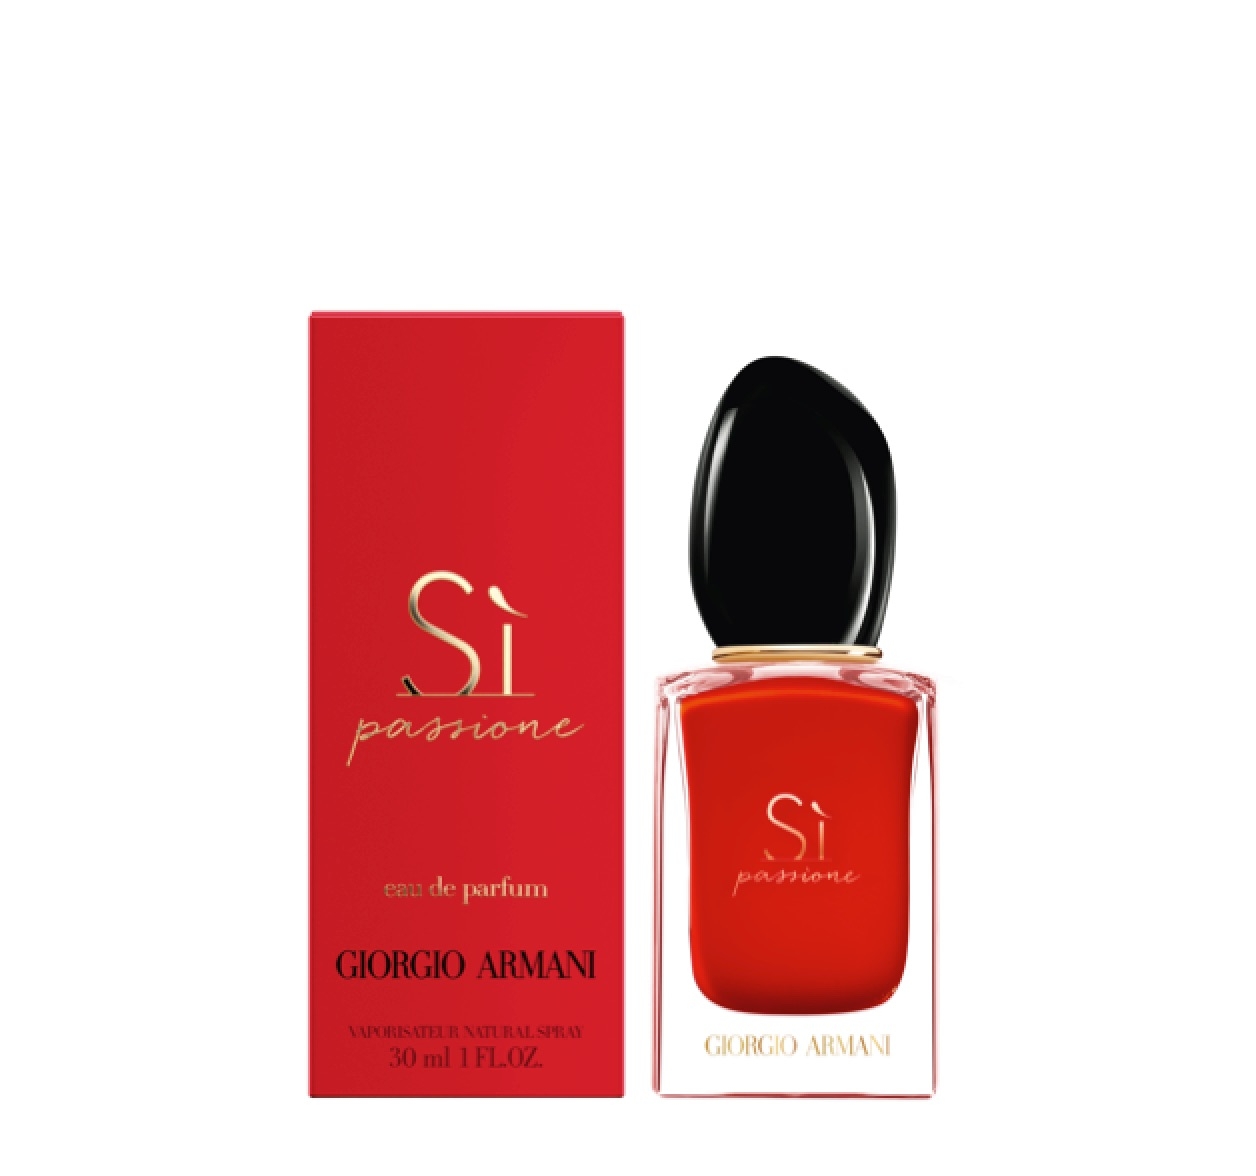 Giorgio Armani Si Passione Eau de Parfum 30ml – Perfume Essence